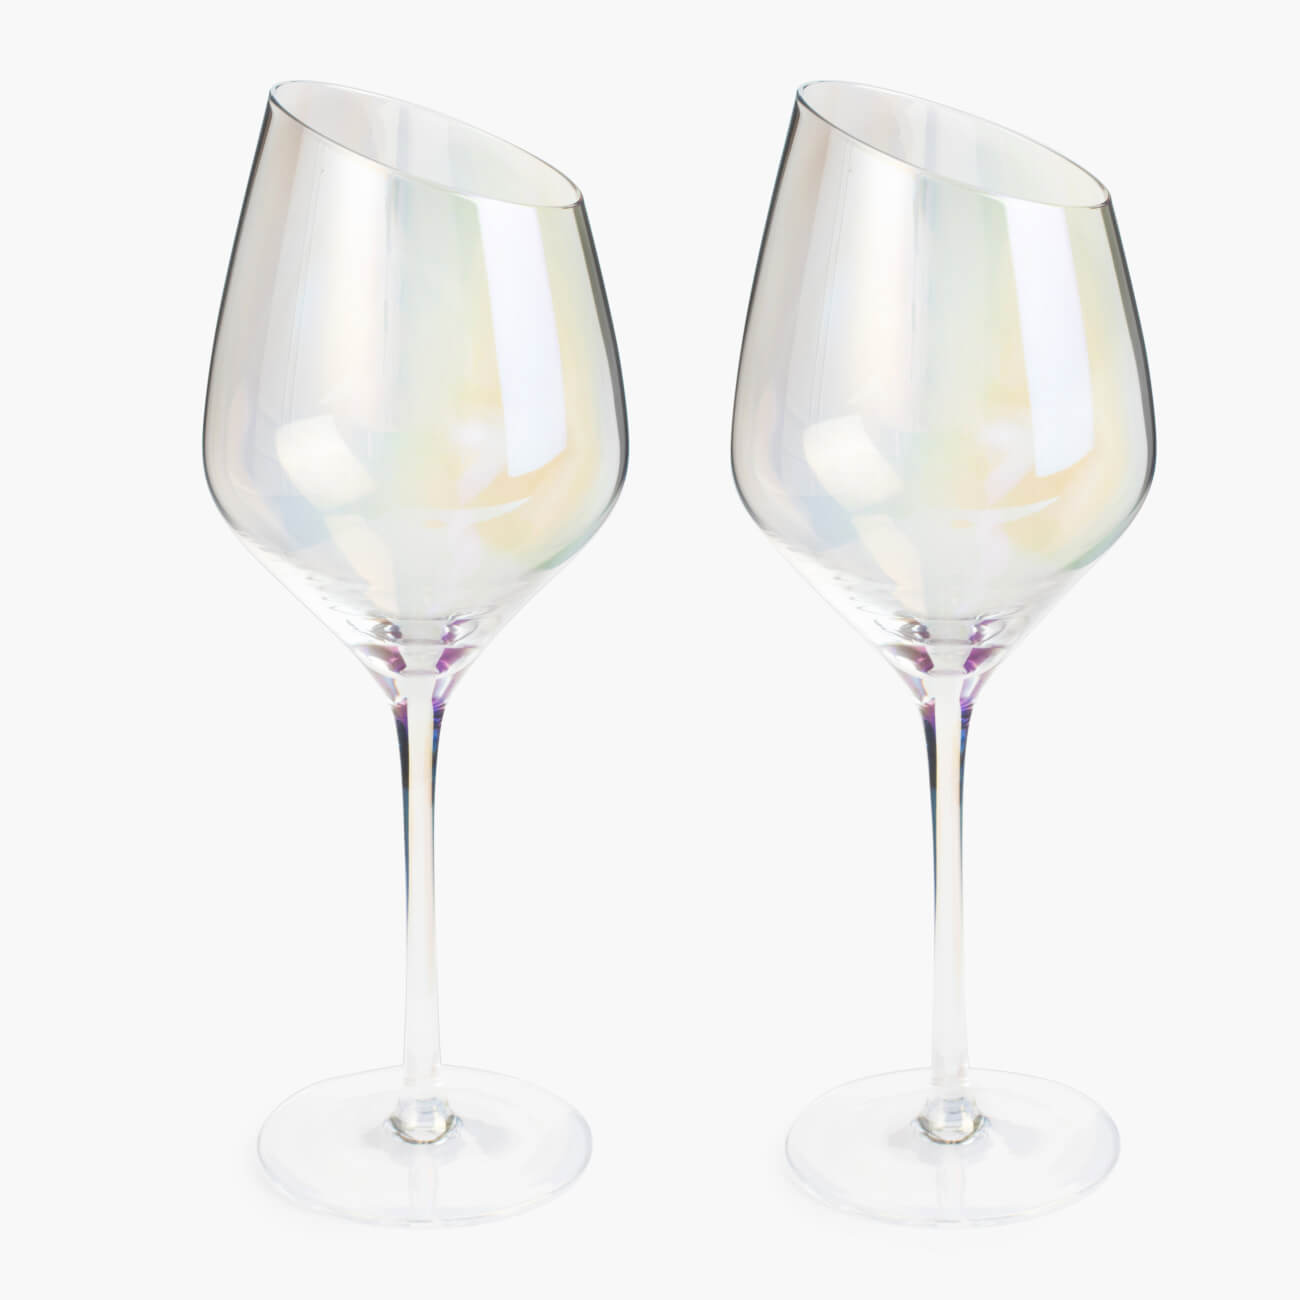 Бокал для белого вина, 460 мл, 4 шт, стекло, перламутр, Charm L polar бокал для красного вина 560 мл 6 шт charm l